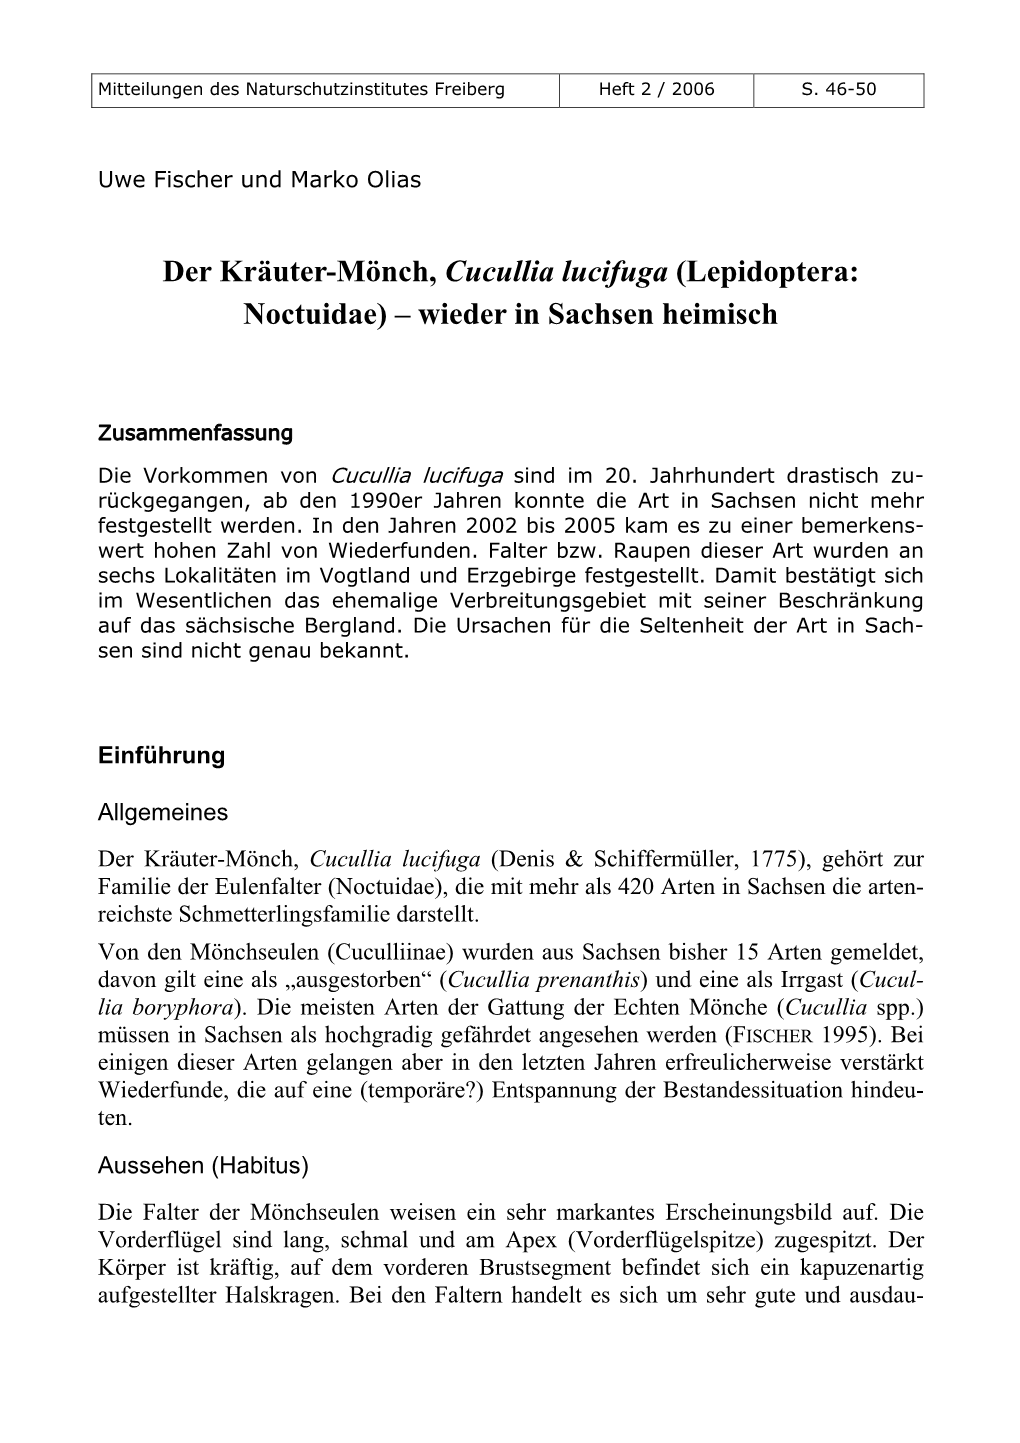 Der Kräuter-Mönch, Cucullia Lucifuga (Lepidoptera: Noctuidae) – Wieder in Sachsen Heimisch